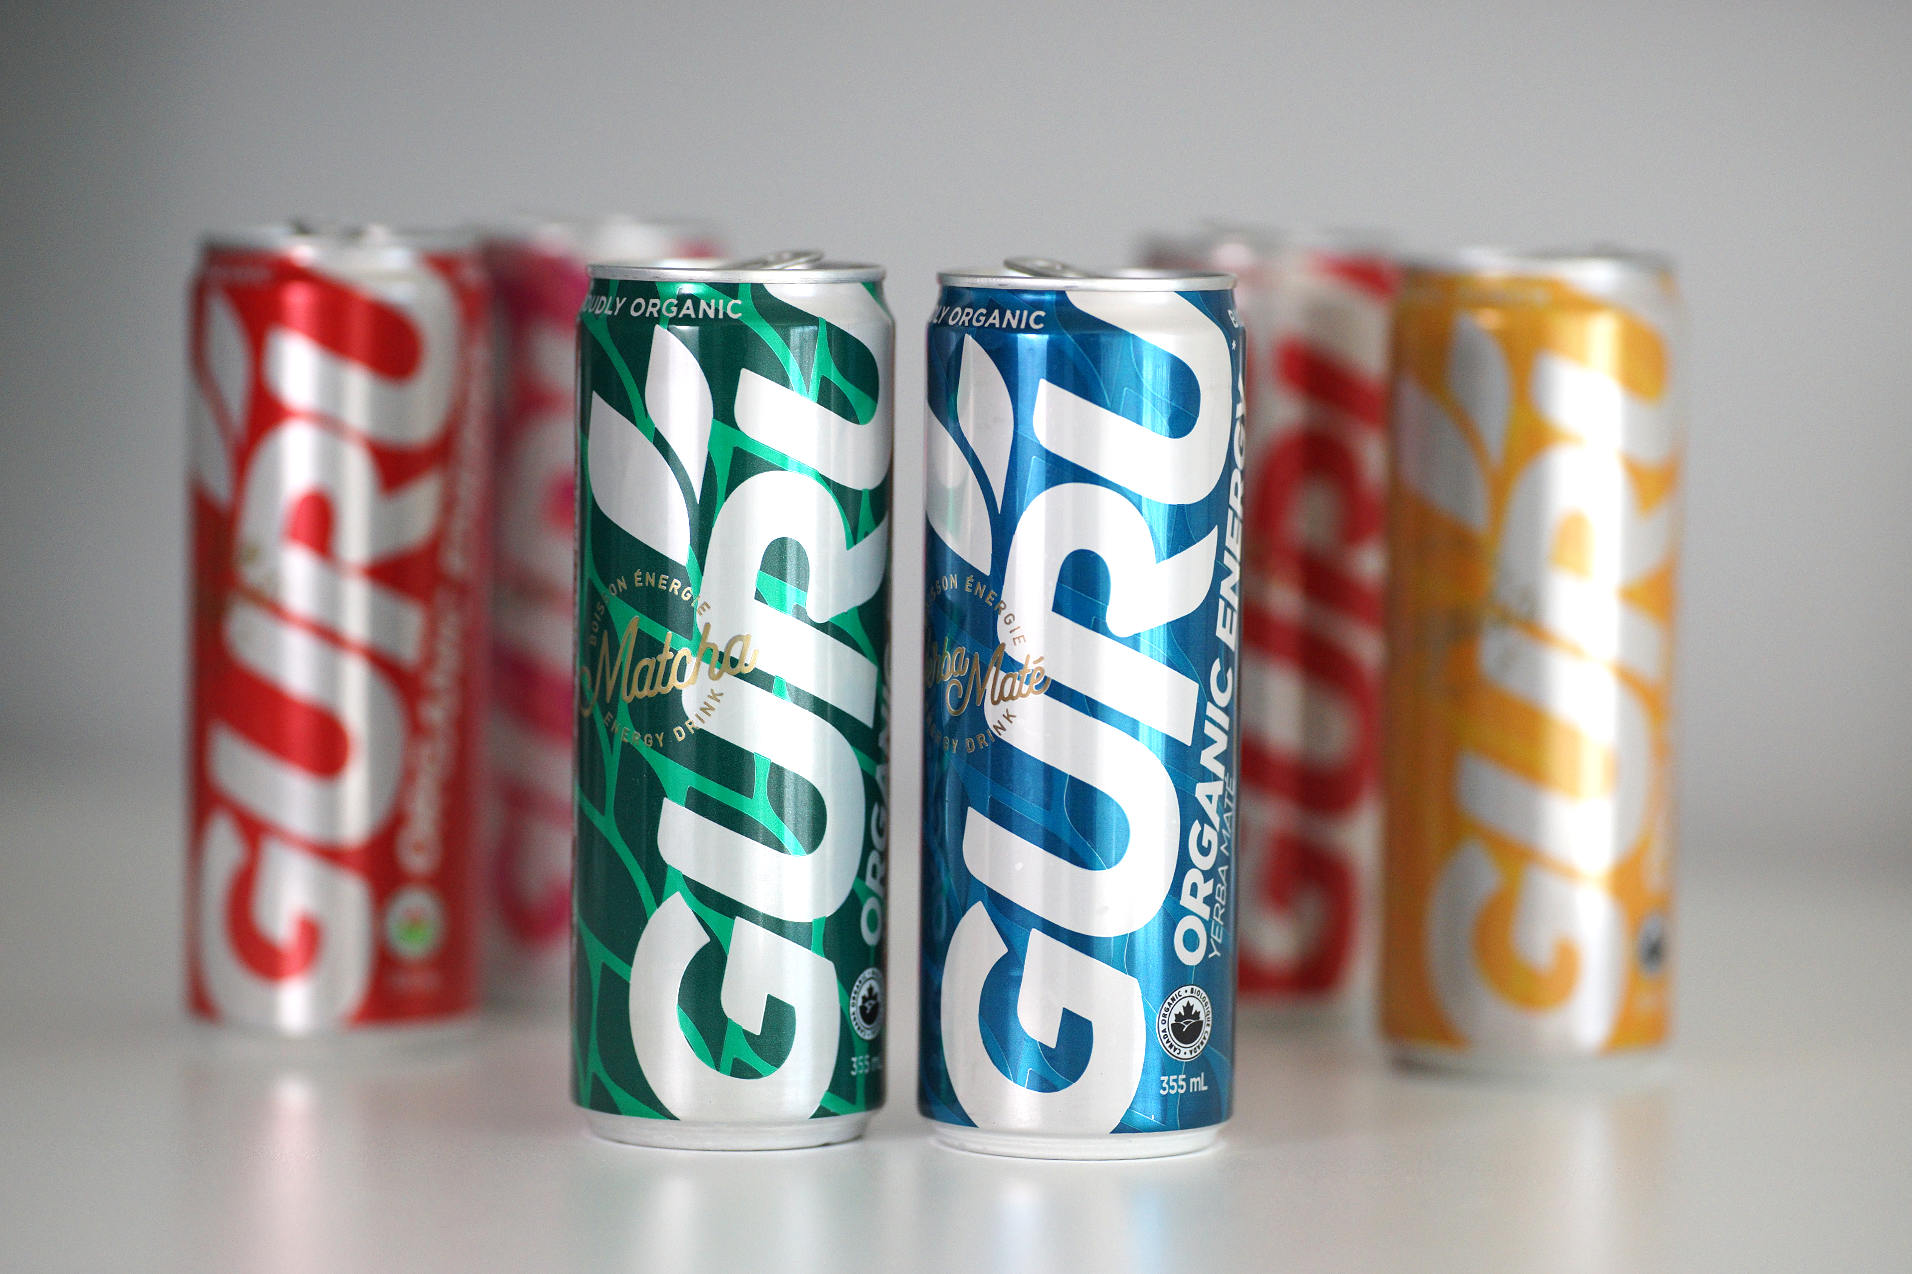 The Guru clean energy drink lineup